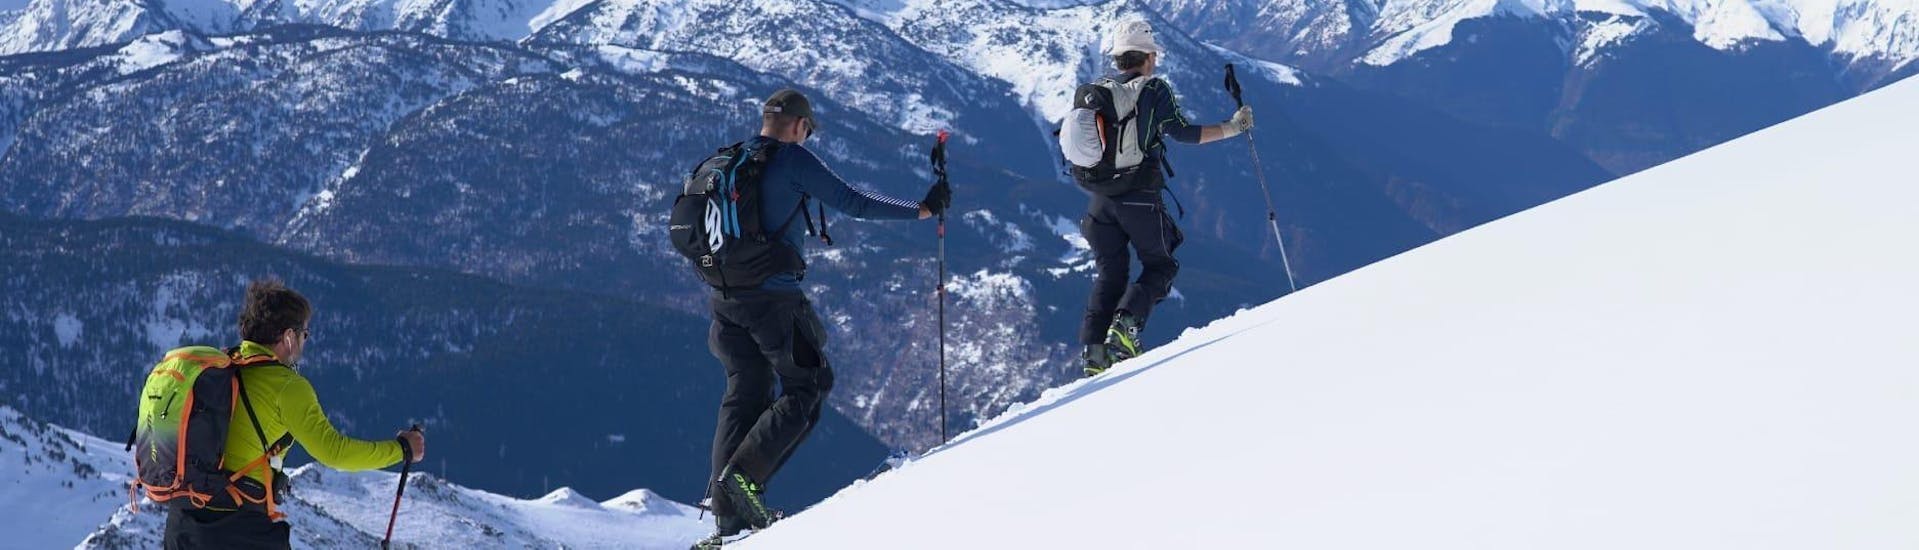 Los participantes del tour están dedicados a subir la montaña durante el Tour privado de esquí para todos los niveles de la Escuela Ski Cerler.